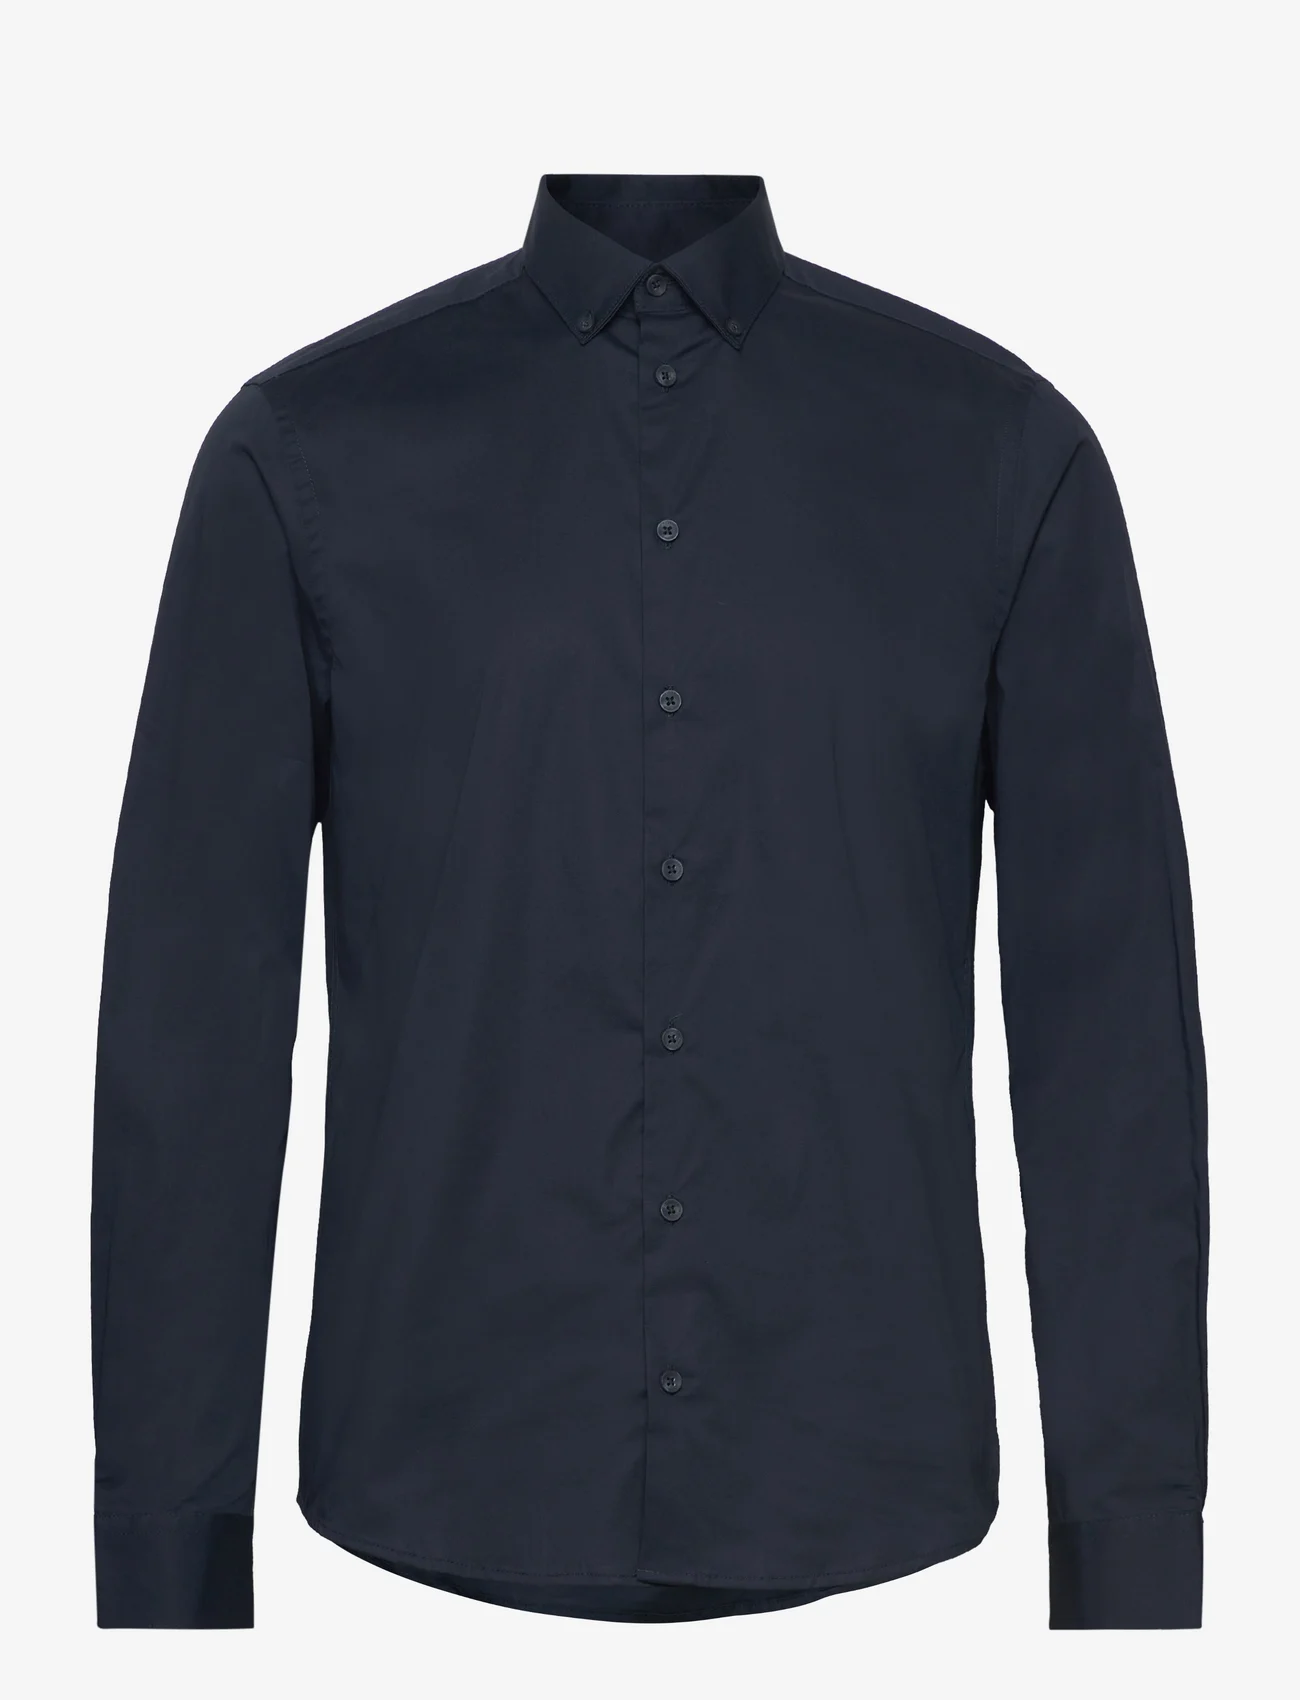 Casual Friday - CFALTO LS BD formal shirt - business shirts - navy - 0